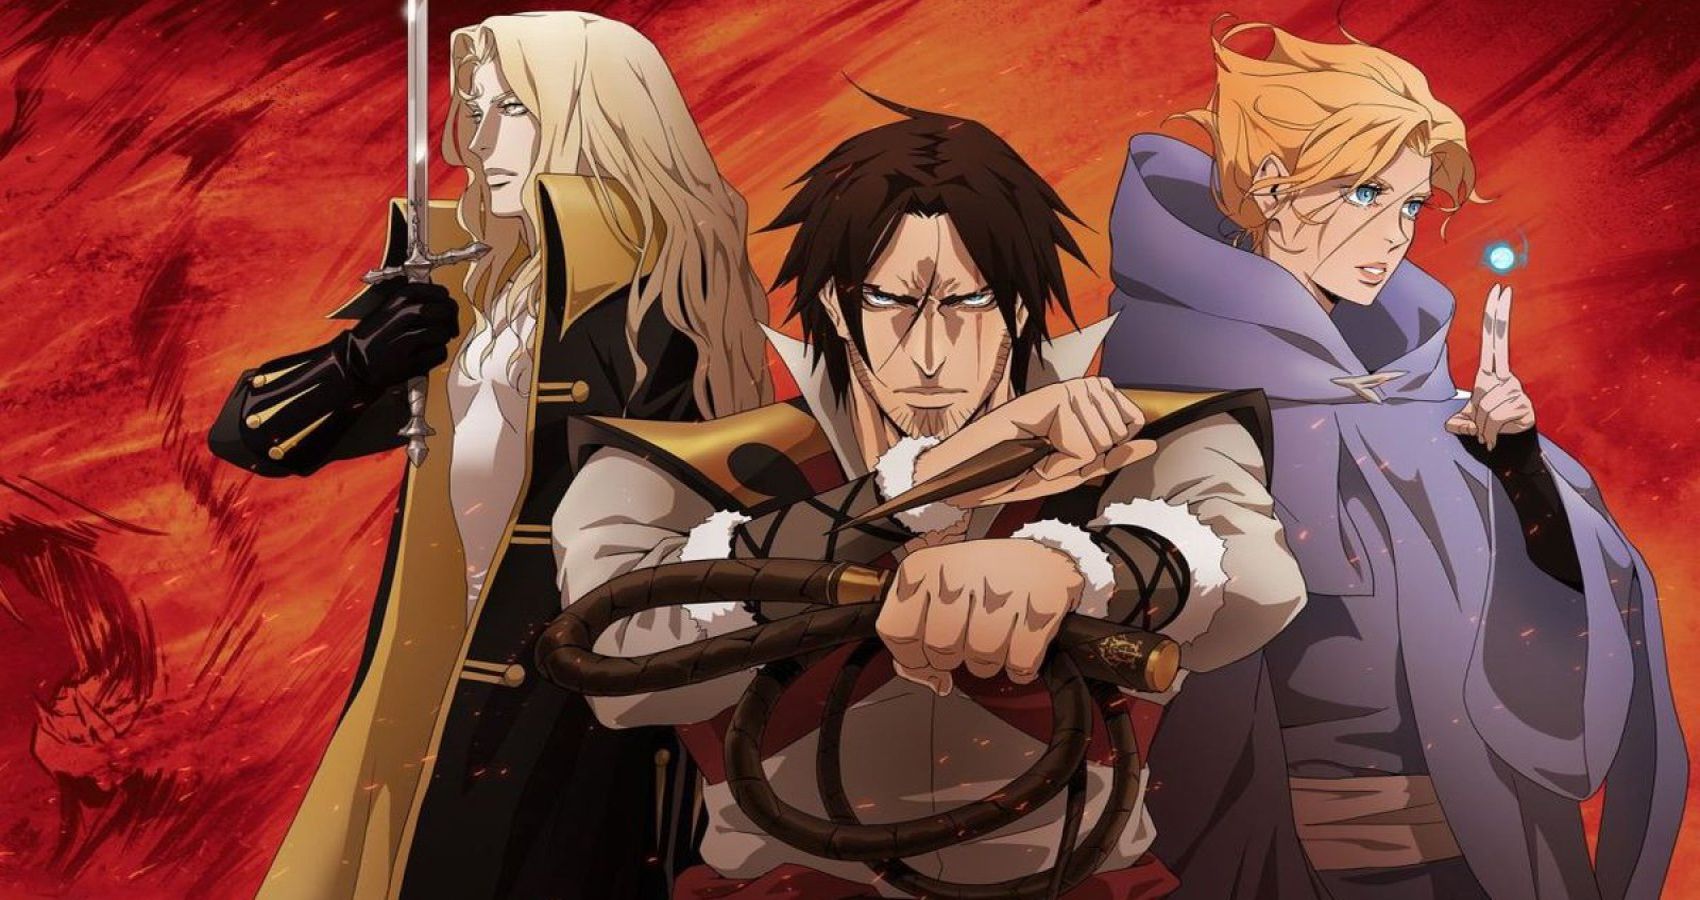 Netflix announces Castlevania: Nocturne anime series featuring Richter  Belmont